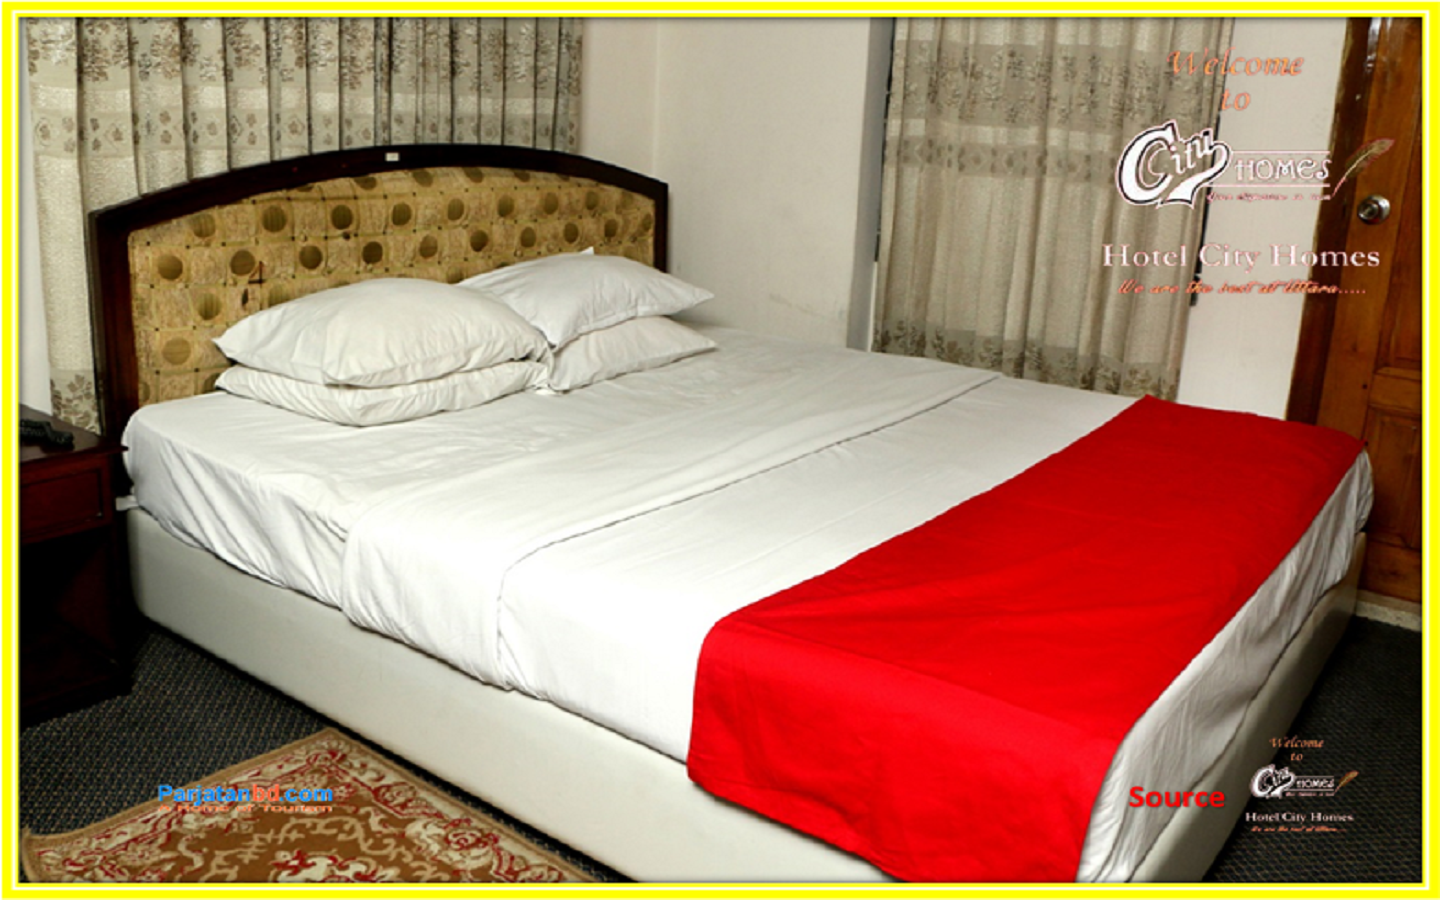 Room Standard -1, City Homes Hotel, Uttara